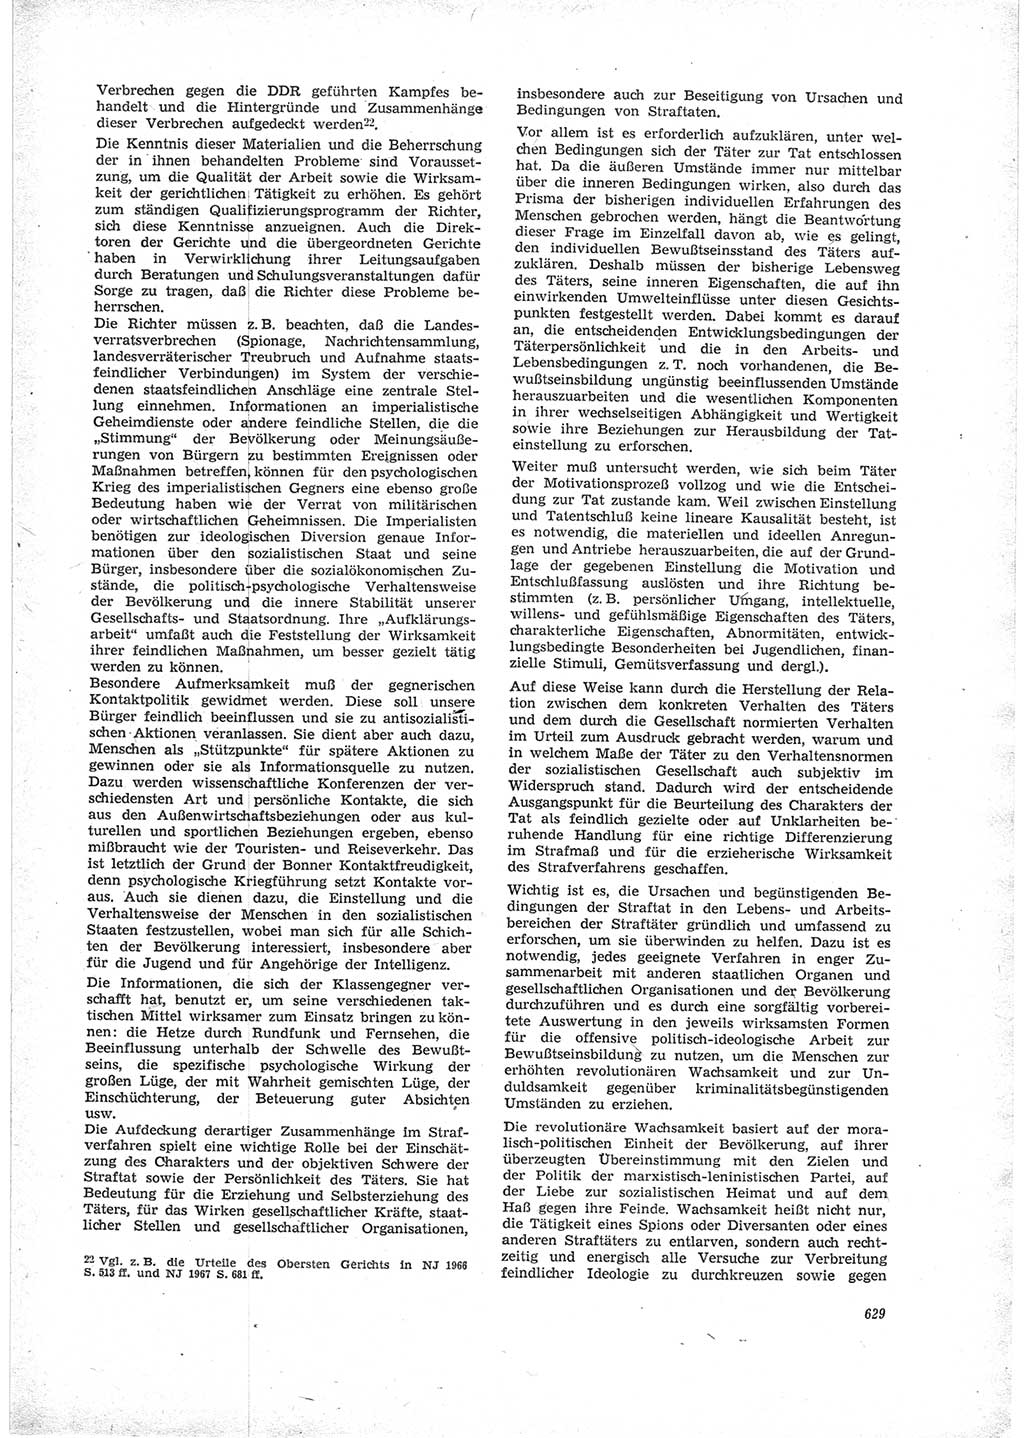 Neue Justiz (NJ), Zeitschrift für Recht und Rechtswissenschaft [Deutsche Demokratische Republik (DDR)], 23. Jahrgang 1969, Seite 629 (NJ DDR 1969, S. 629)